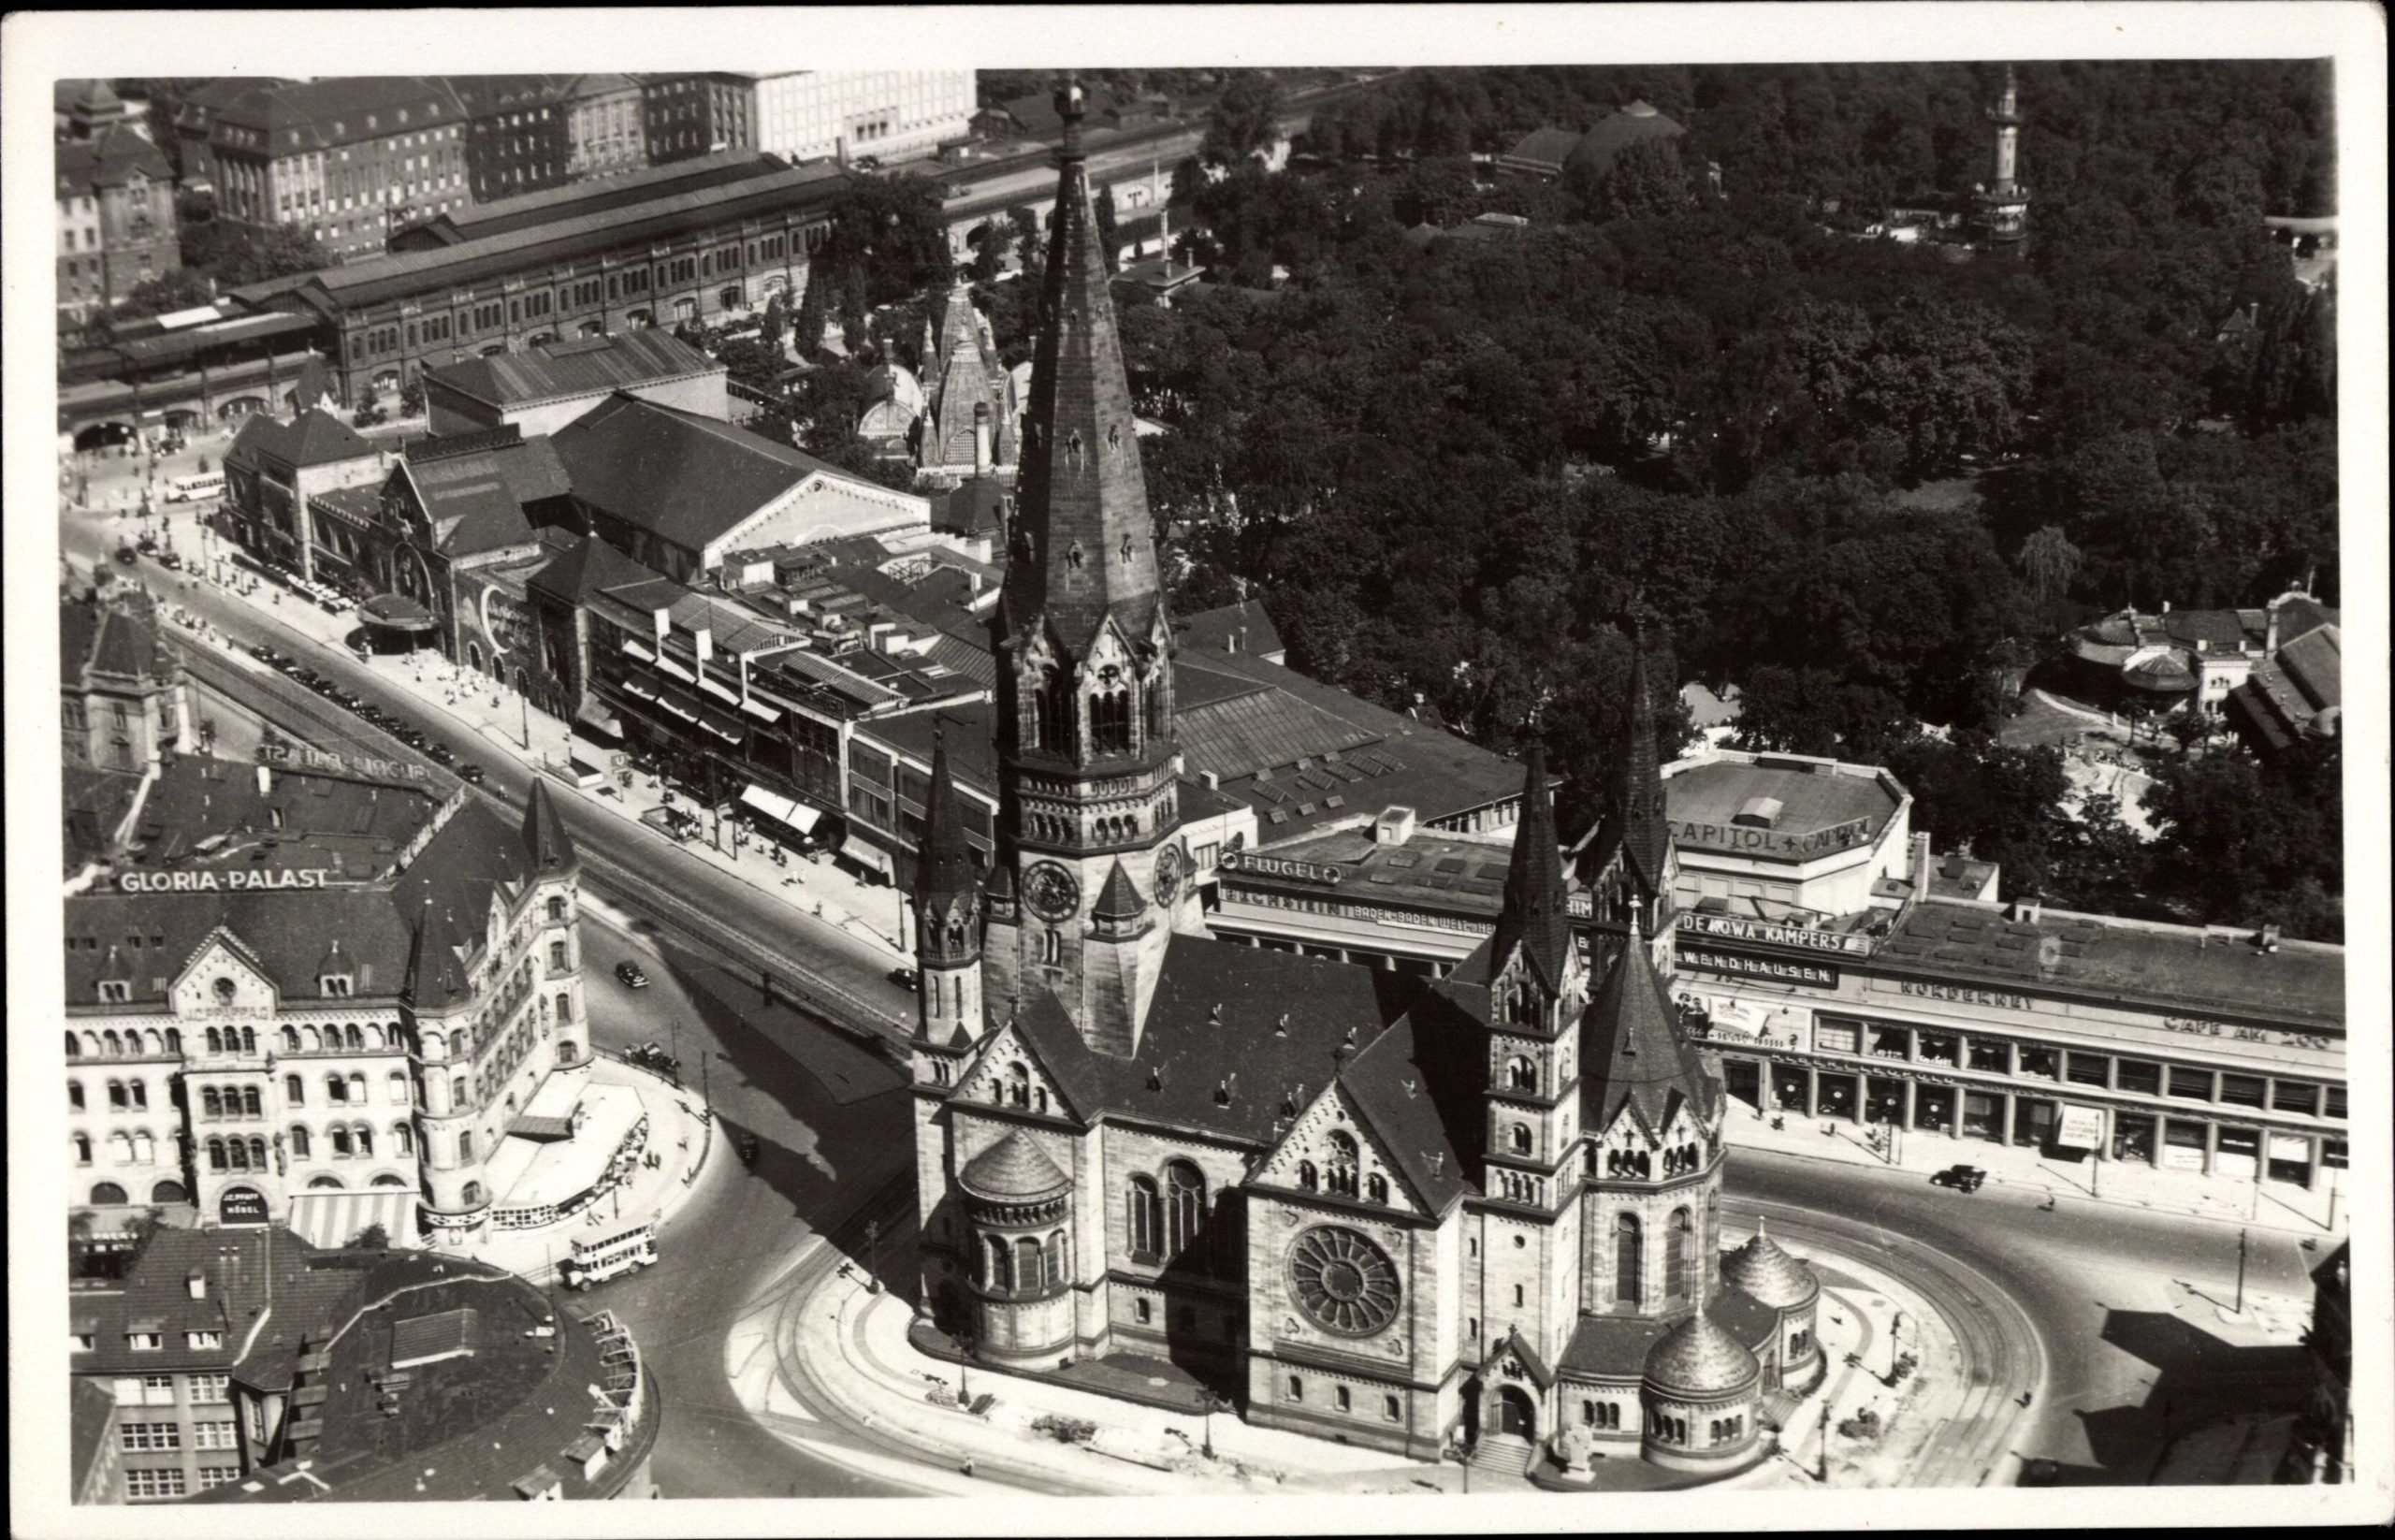 Kurfürstendamm mit Gedächtniskirche und Gloria-Palast, historische Luftaufnahme aus den 1930er-Jahren. Foto: Imago/arkivi